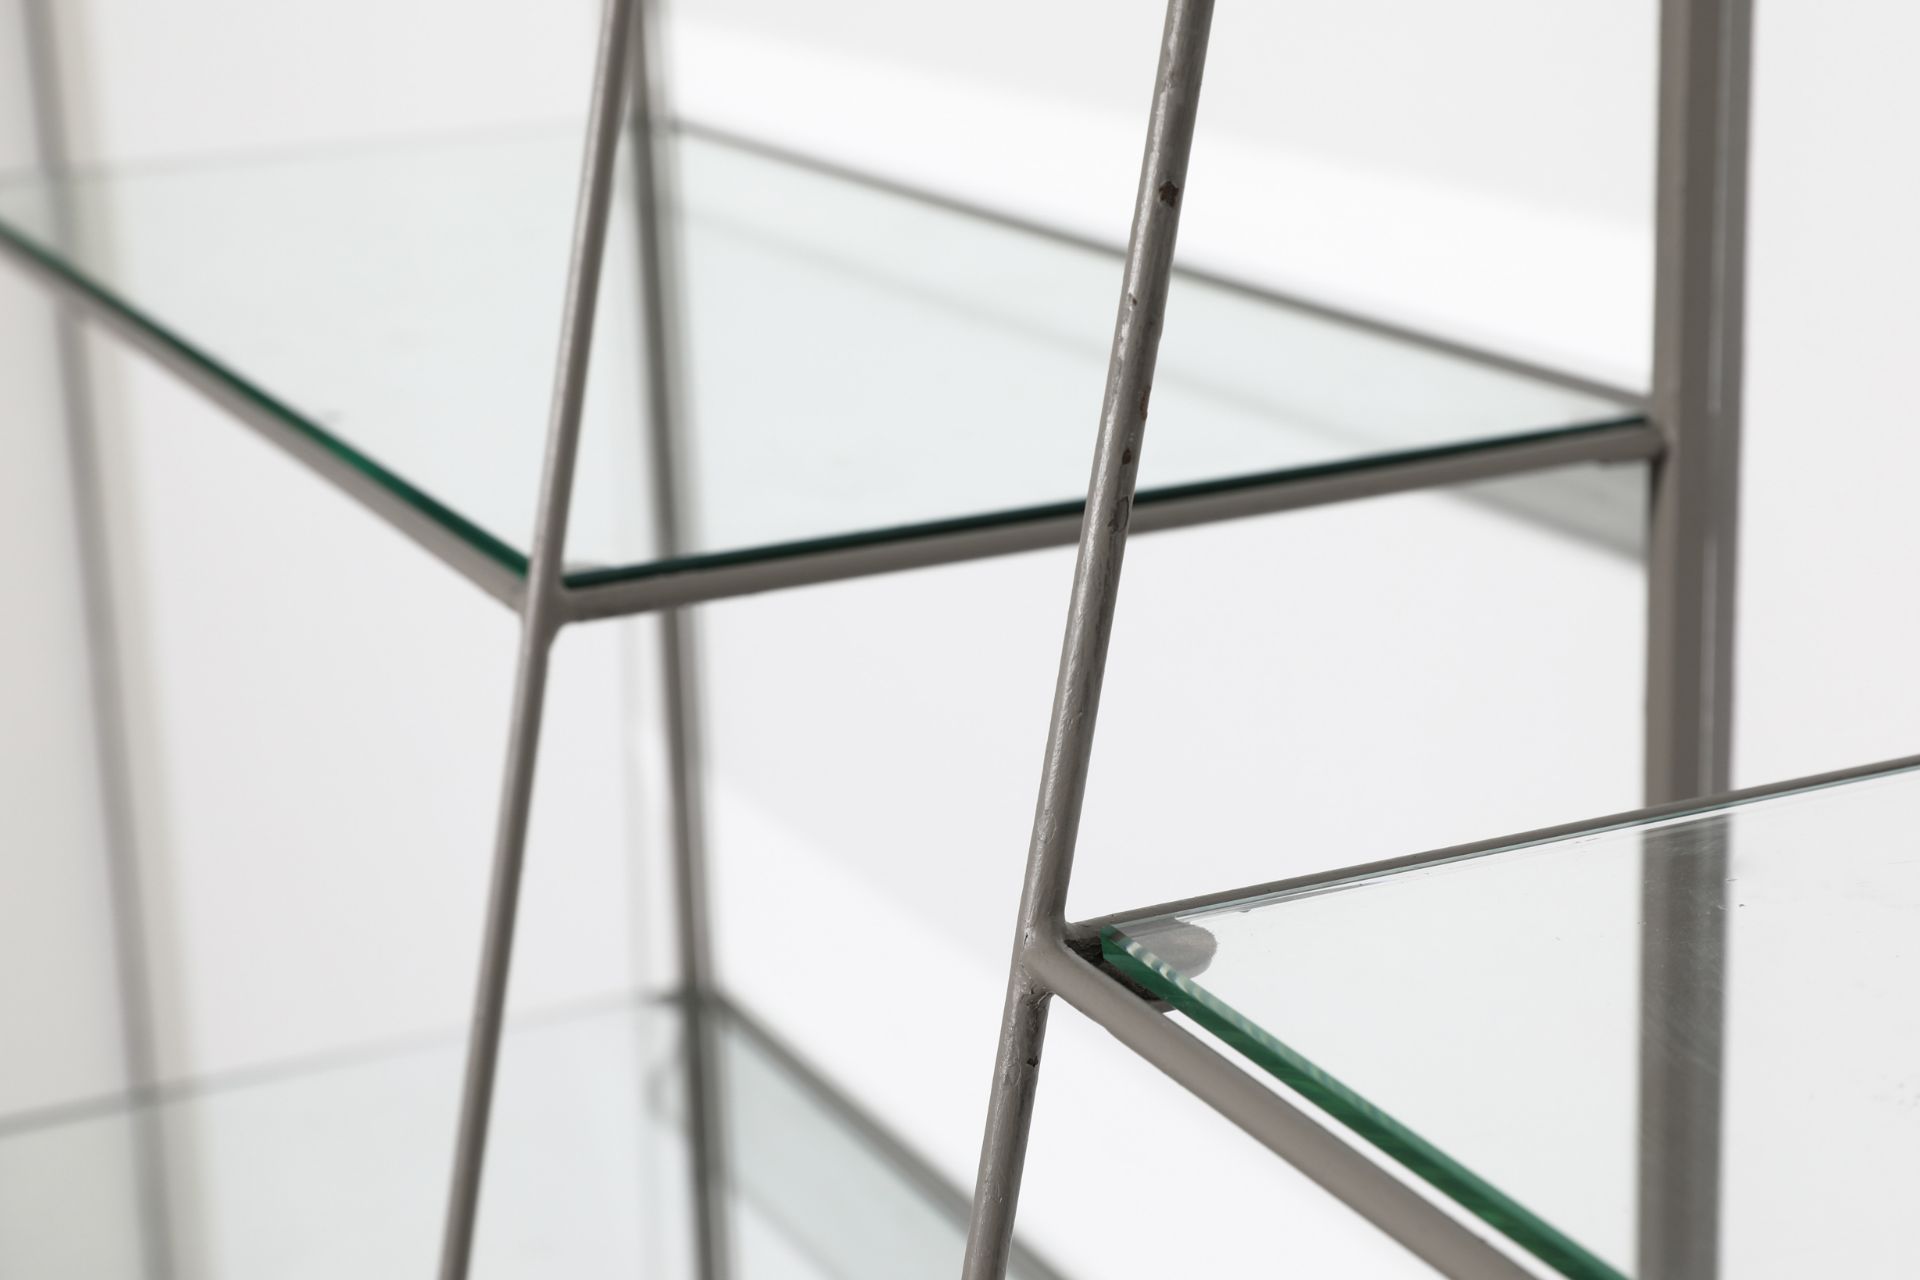 Philip Rosenthal, 2 shelves, model Minimal - Image 5 of 5